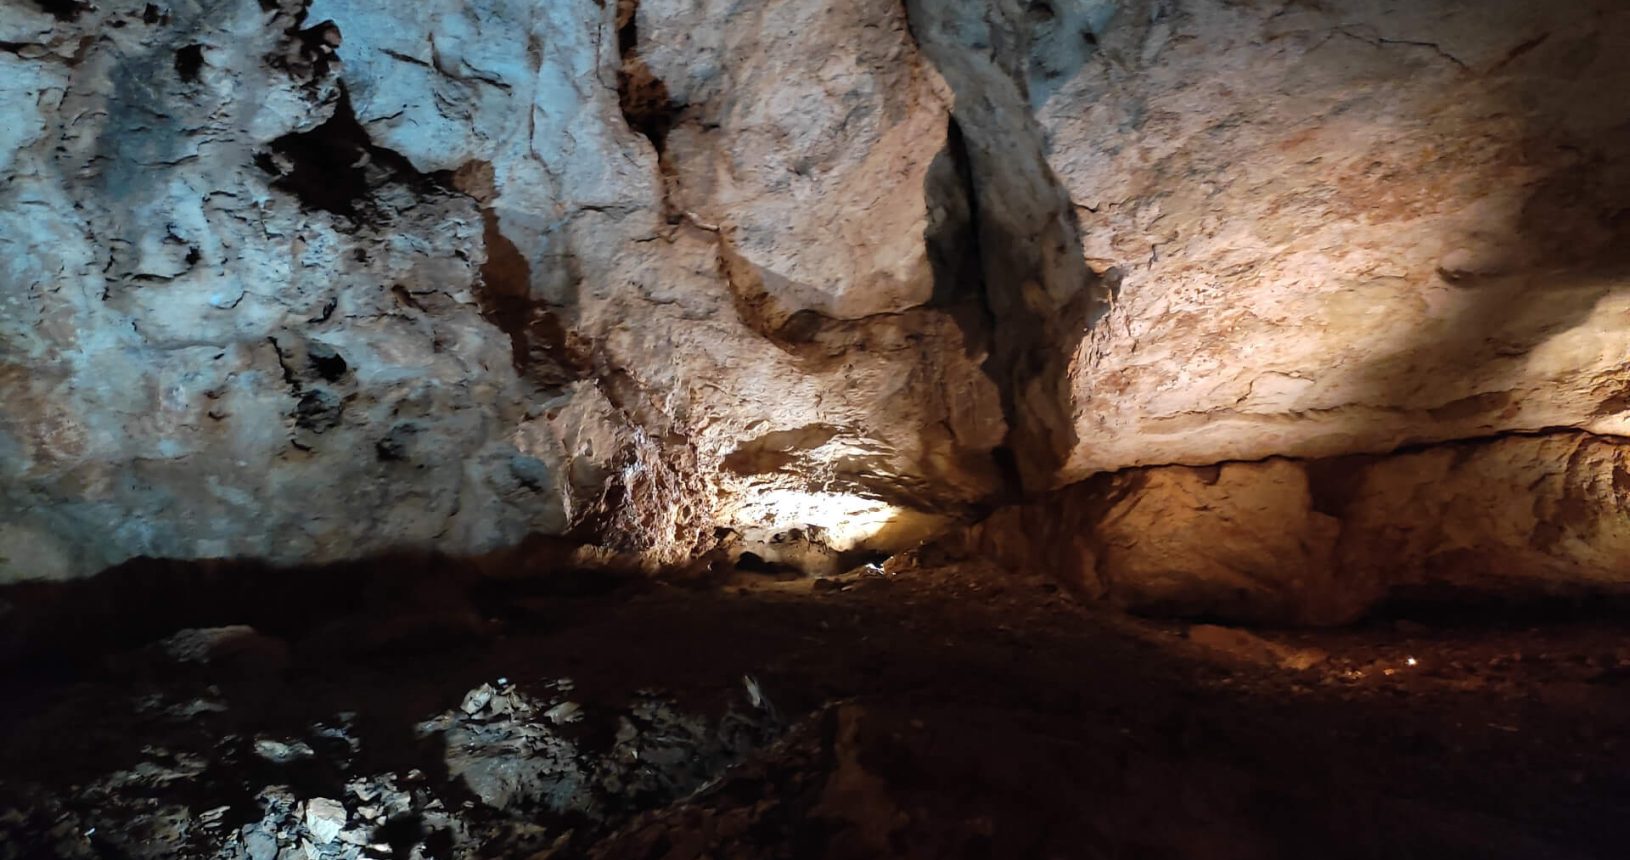 Peaceful Lipa Cave